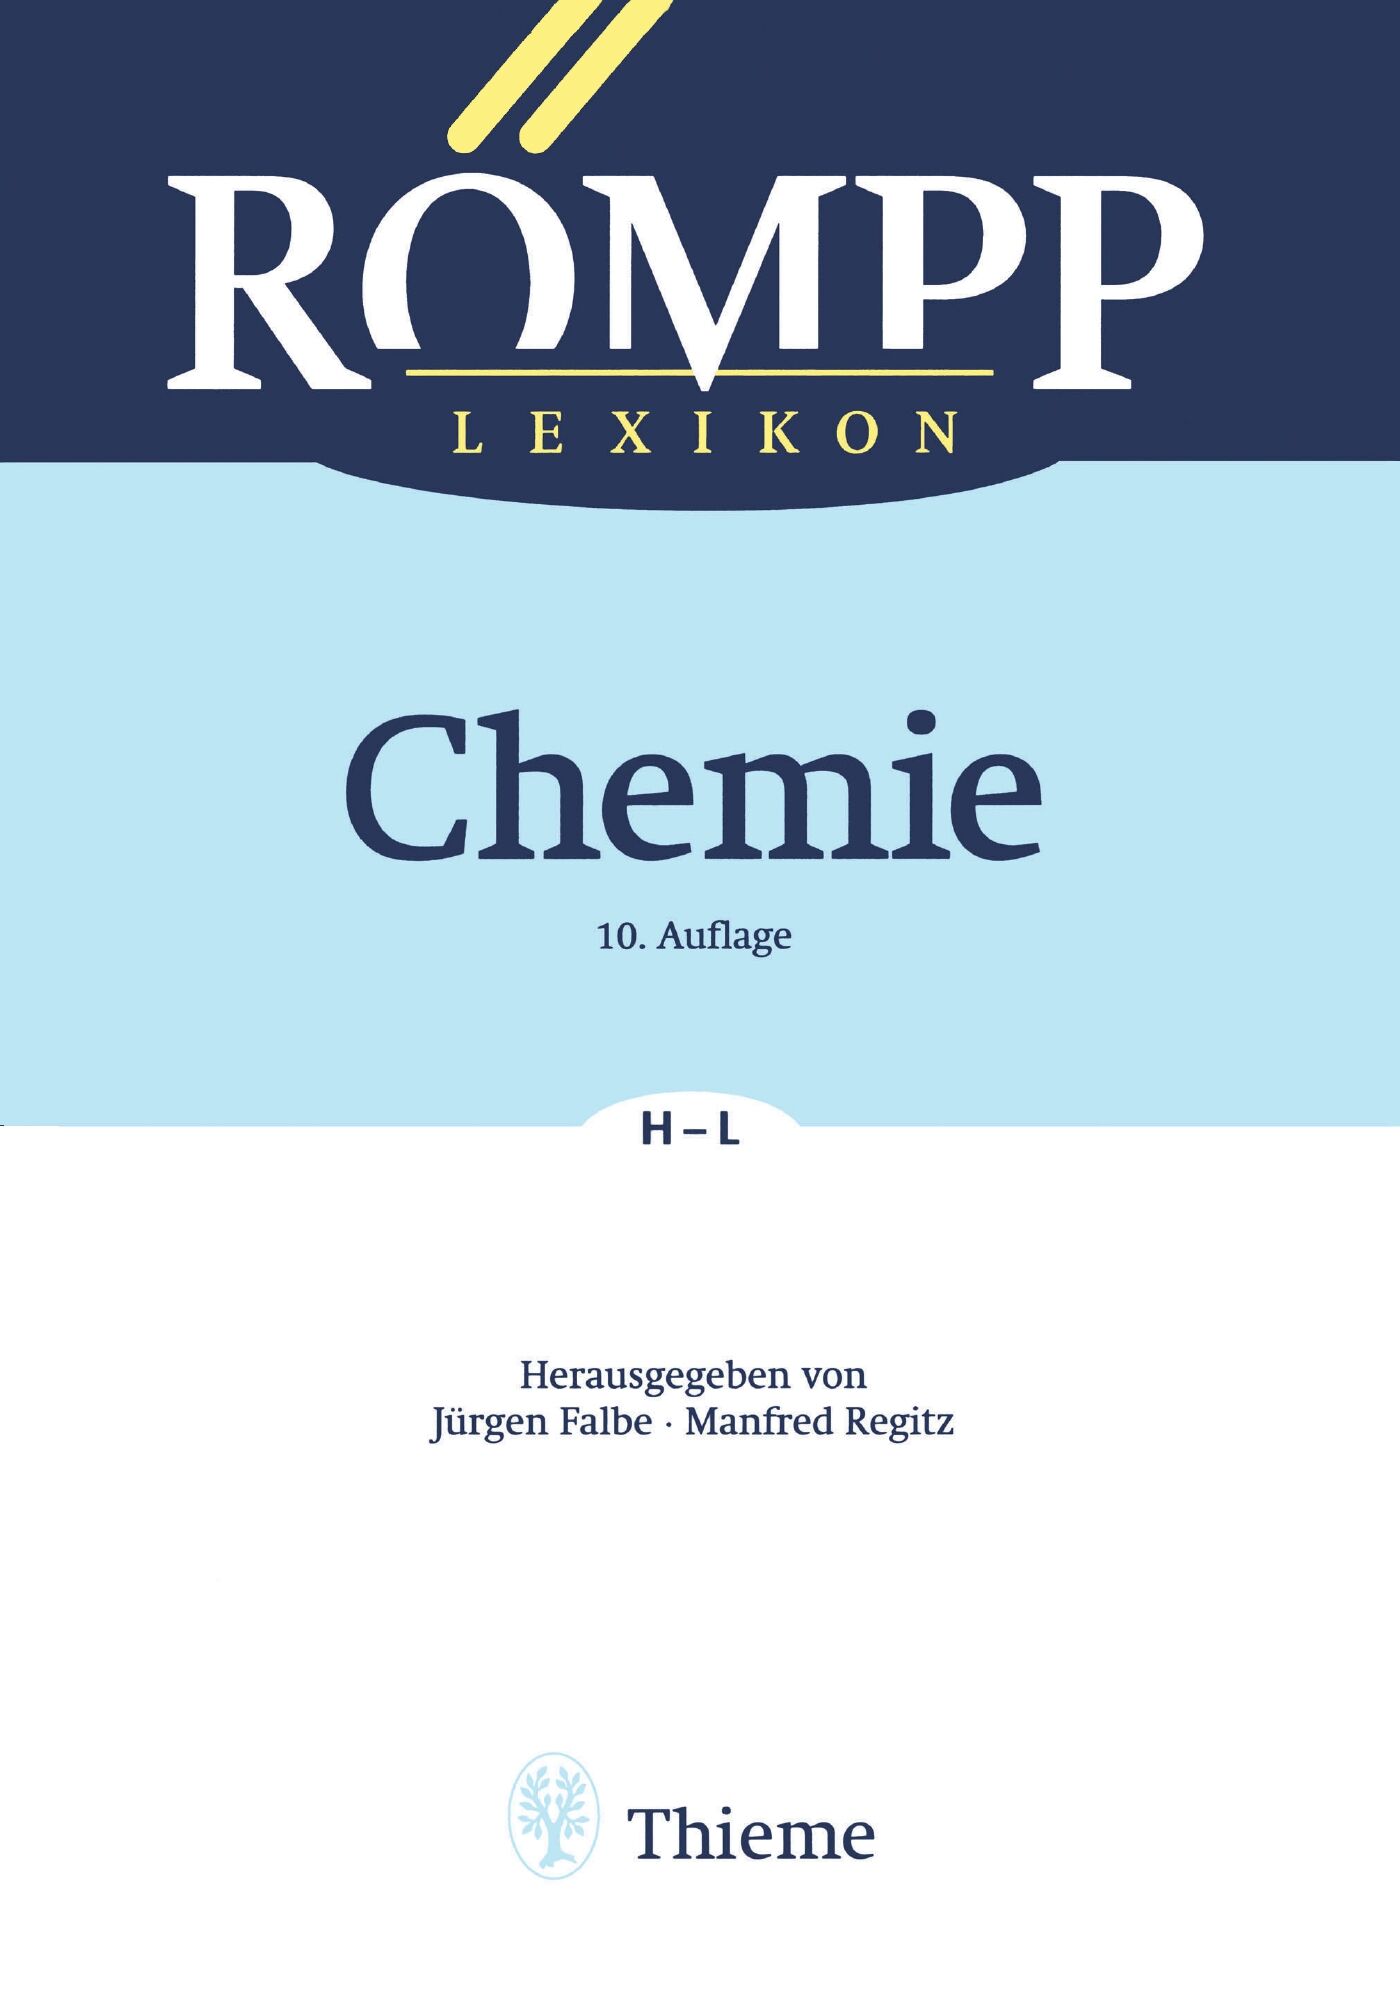 RÖMPP Lexikon Chemie, 10. Auflage, 1996-1999, 9783131999917